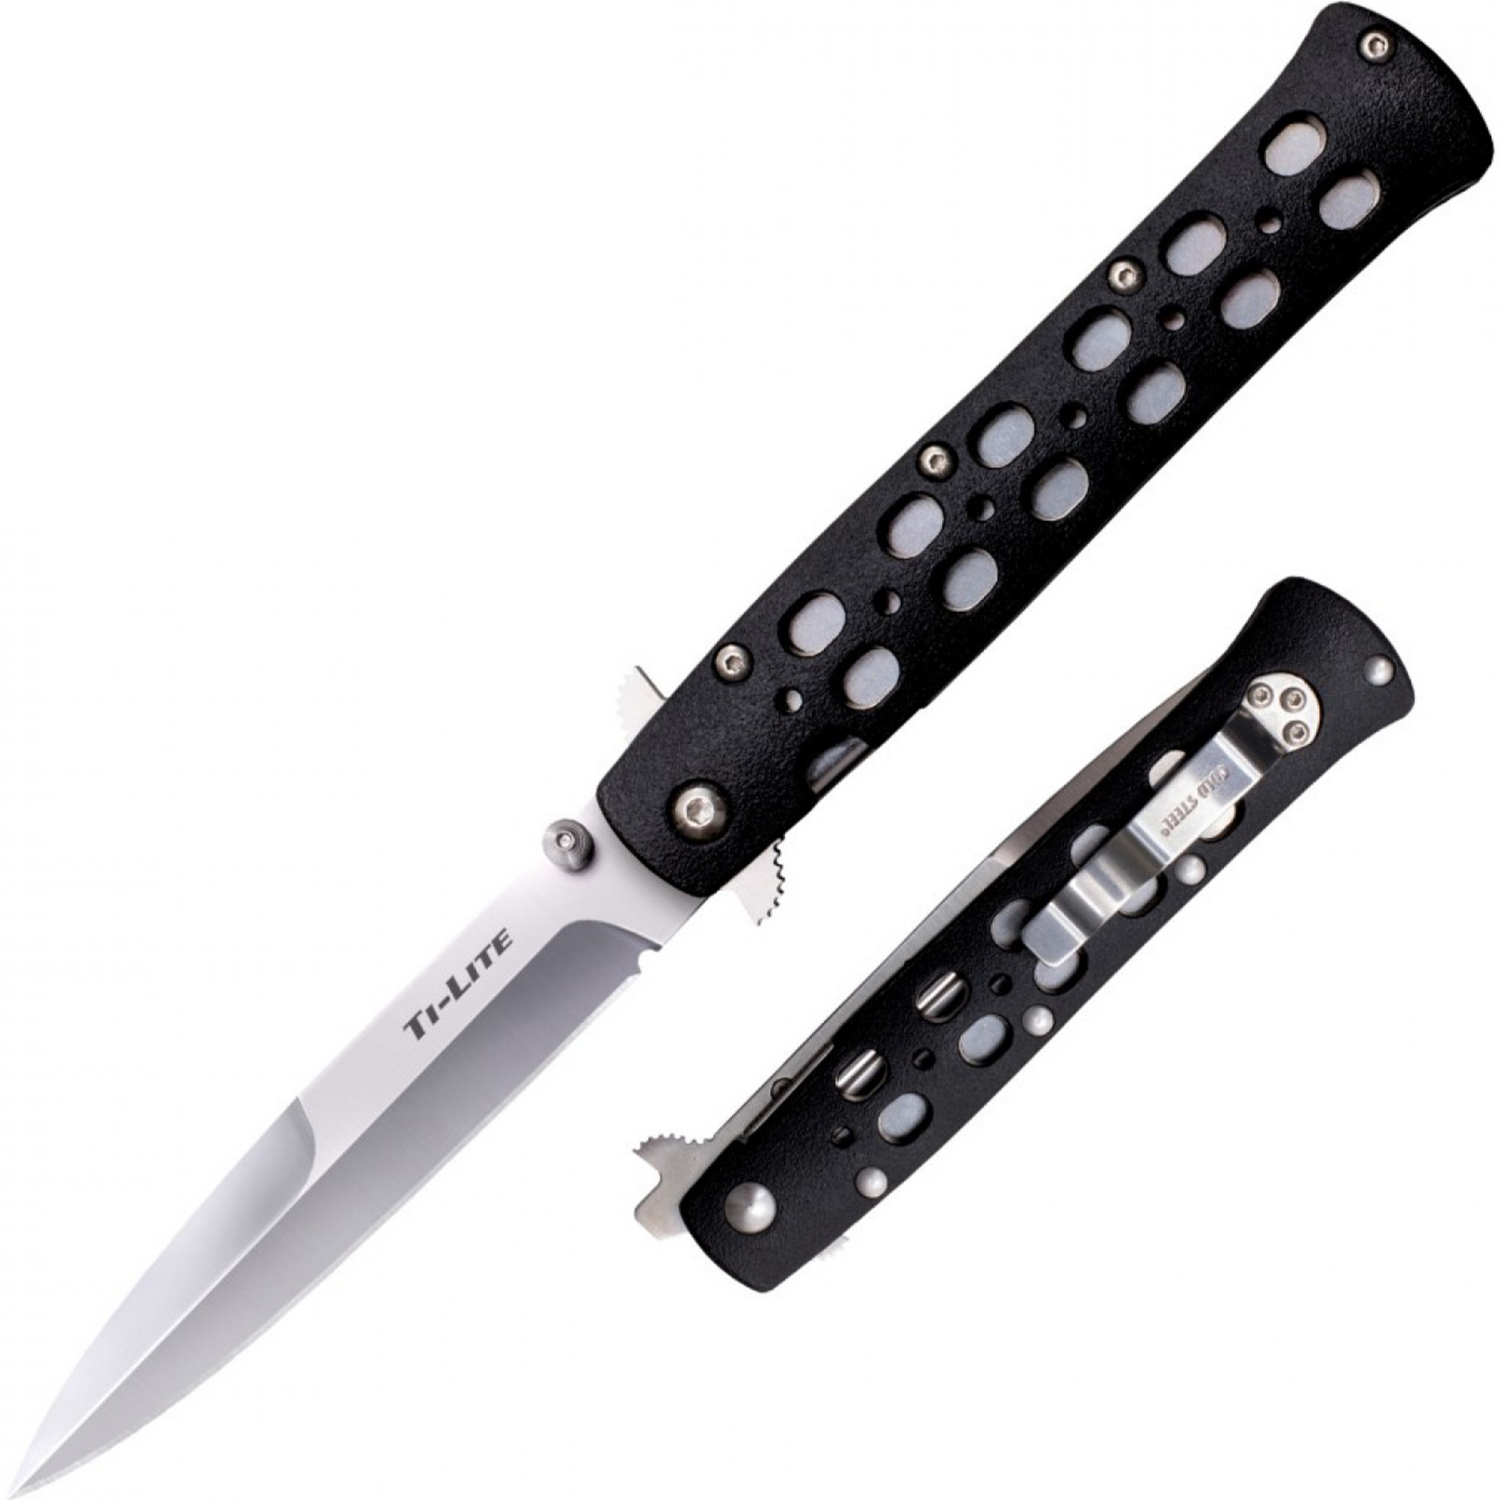 Нож складной Cold Steel Ti-Lite 4, сталь AUS-8A, рукоять zytel, black, Бренды, Cold Steel